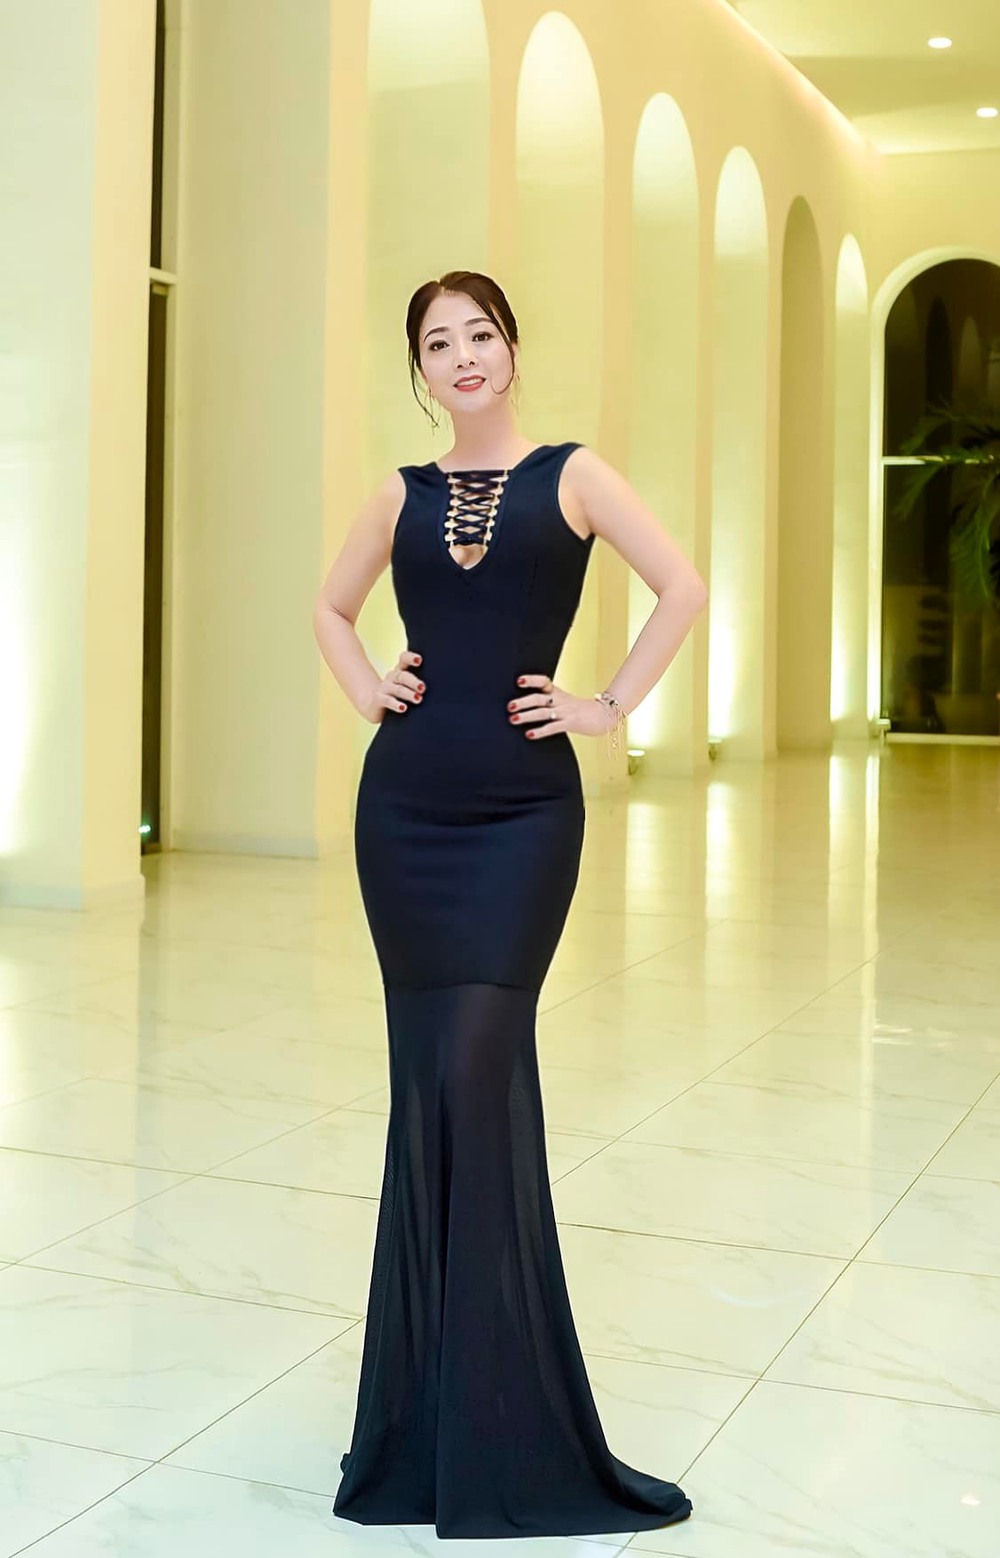 Hoa hậu Quý bà Hoàng Yến sau 13 năm đăng quang: Cuộc sống sung túc, U50 như gái đôi mươi - ảnh 5